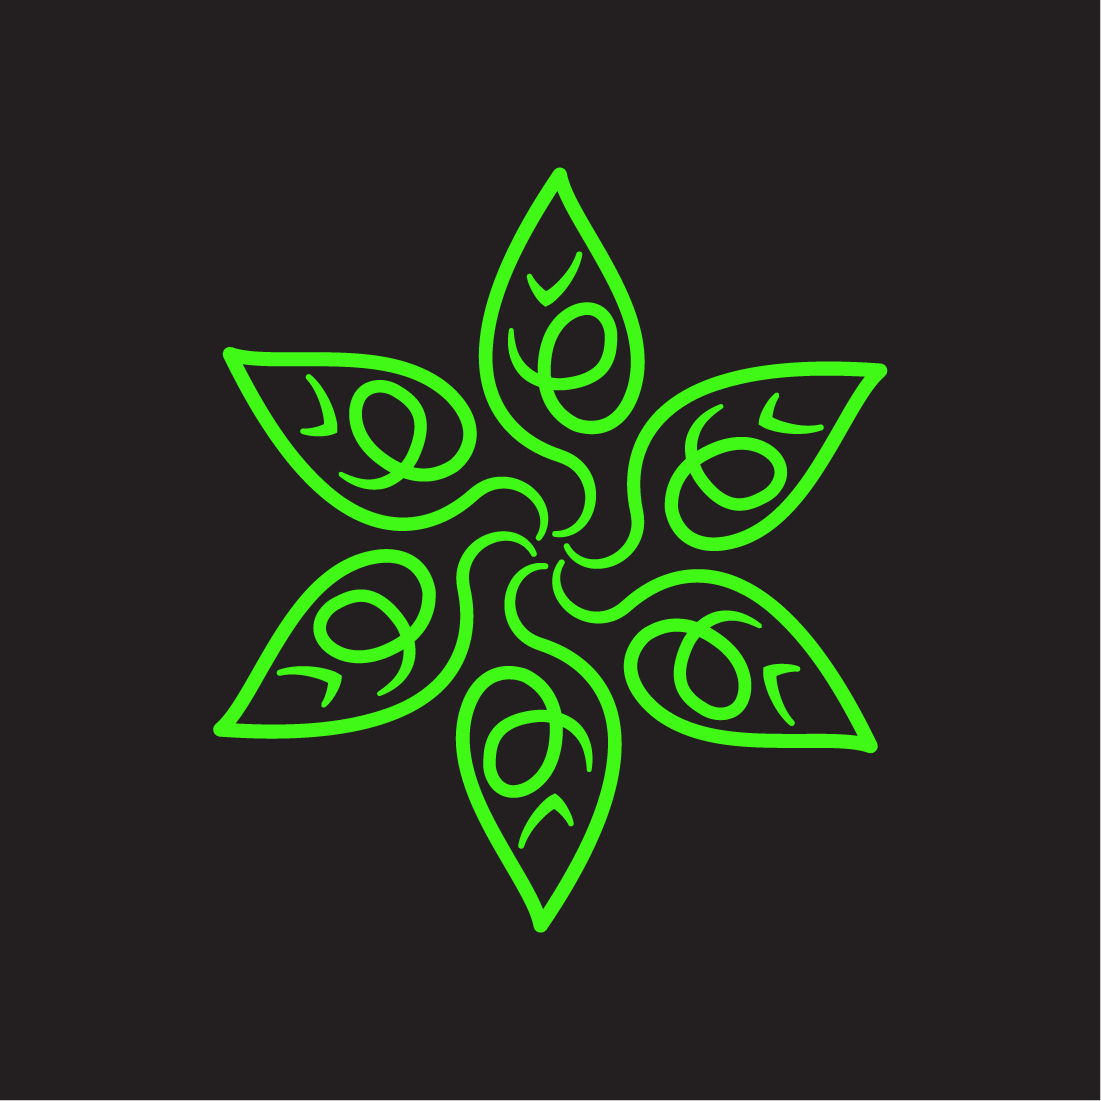 Logo, Eco logo, Nature logo preview image.